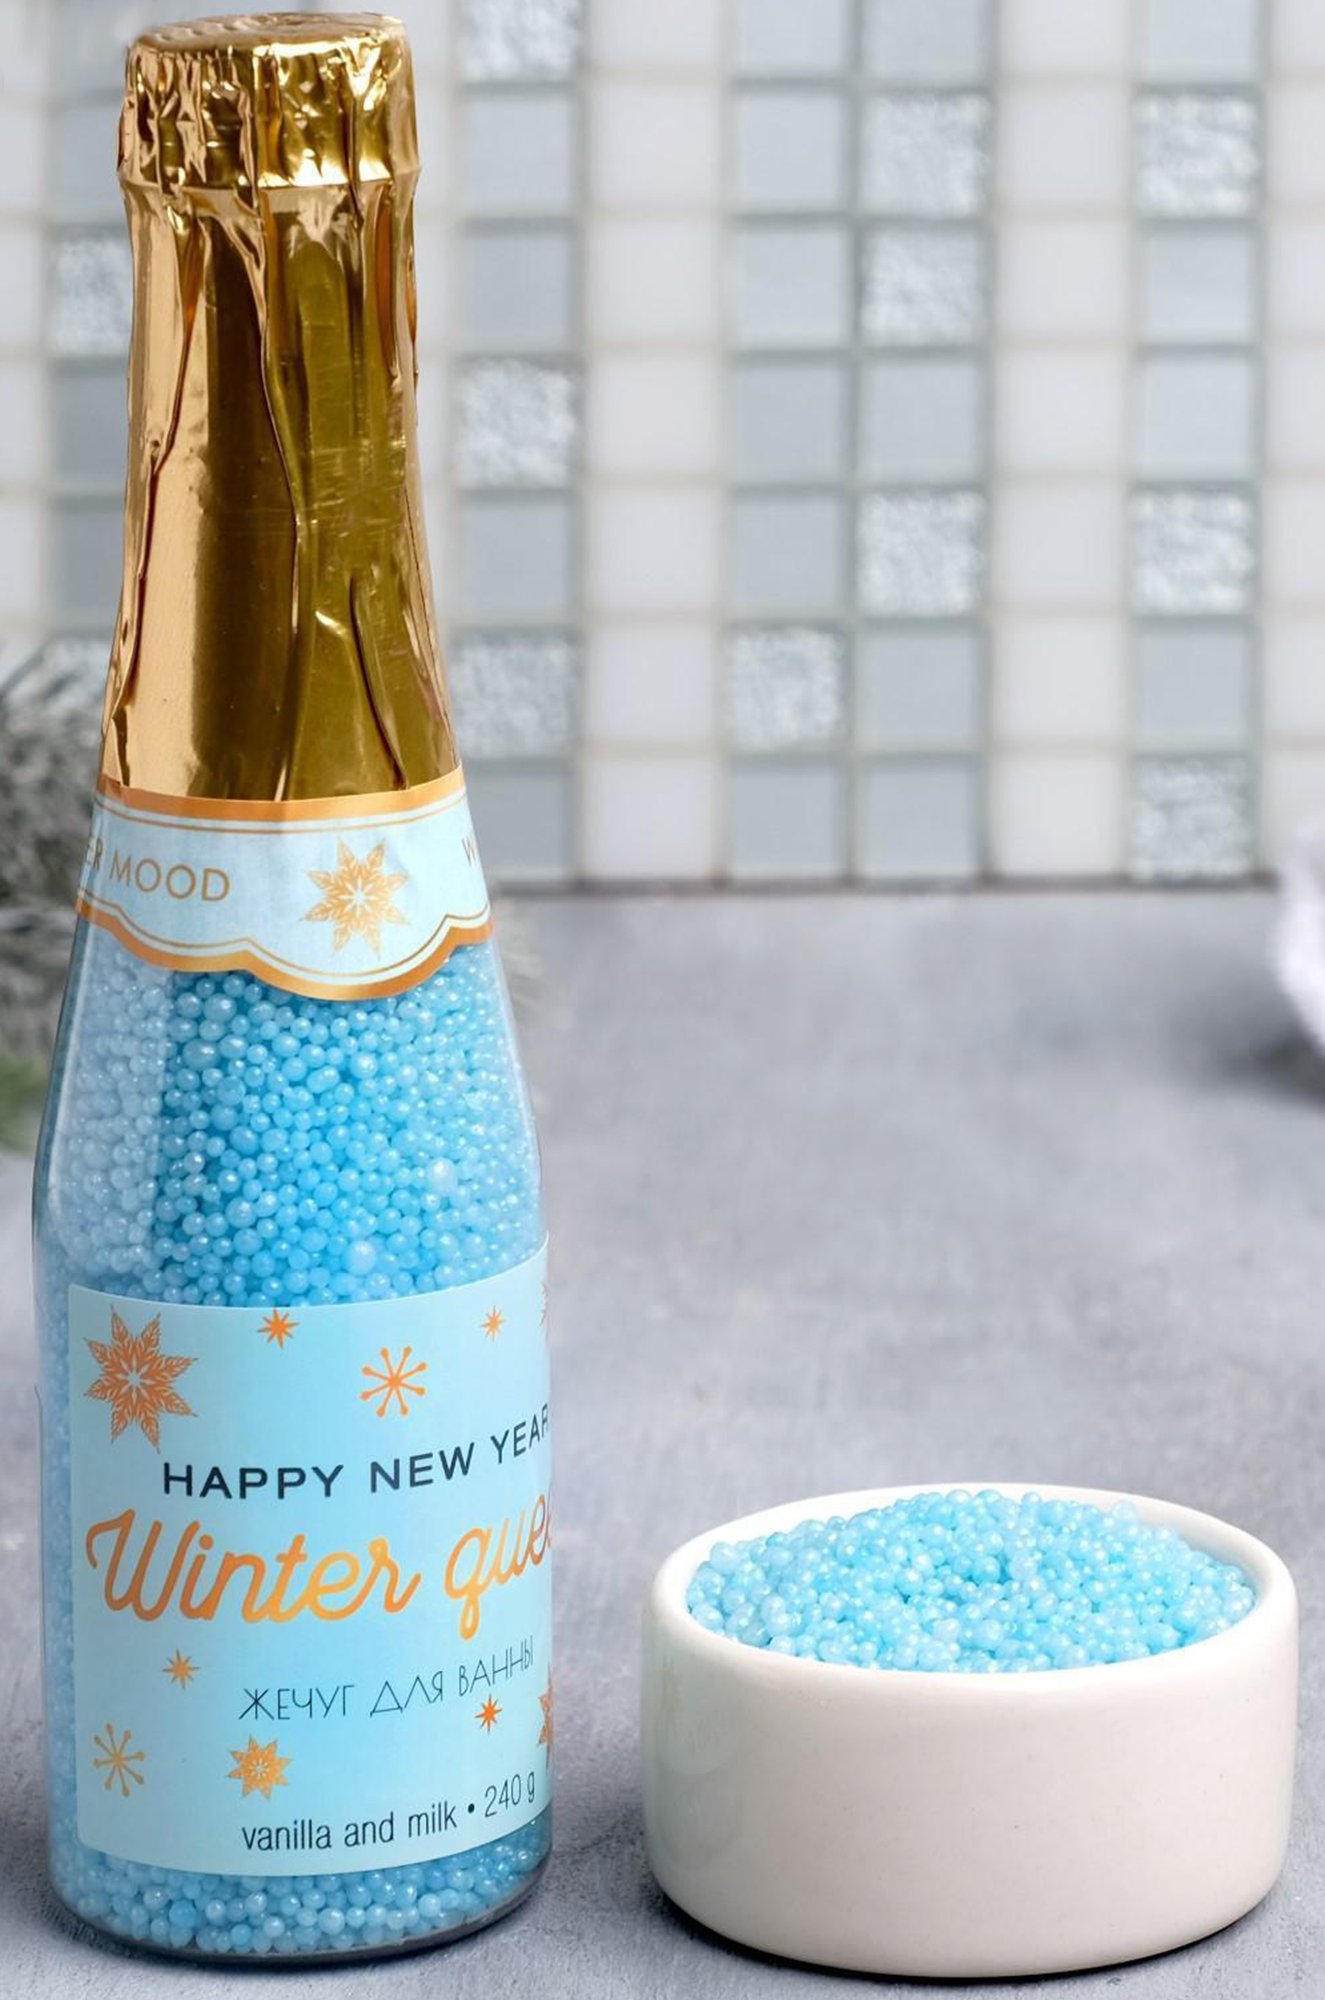 Соль для ванны в виде жемчуга во флаконе шампанского с ароматом ванильное молоко 240 гр Чистое счастье